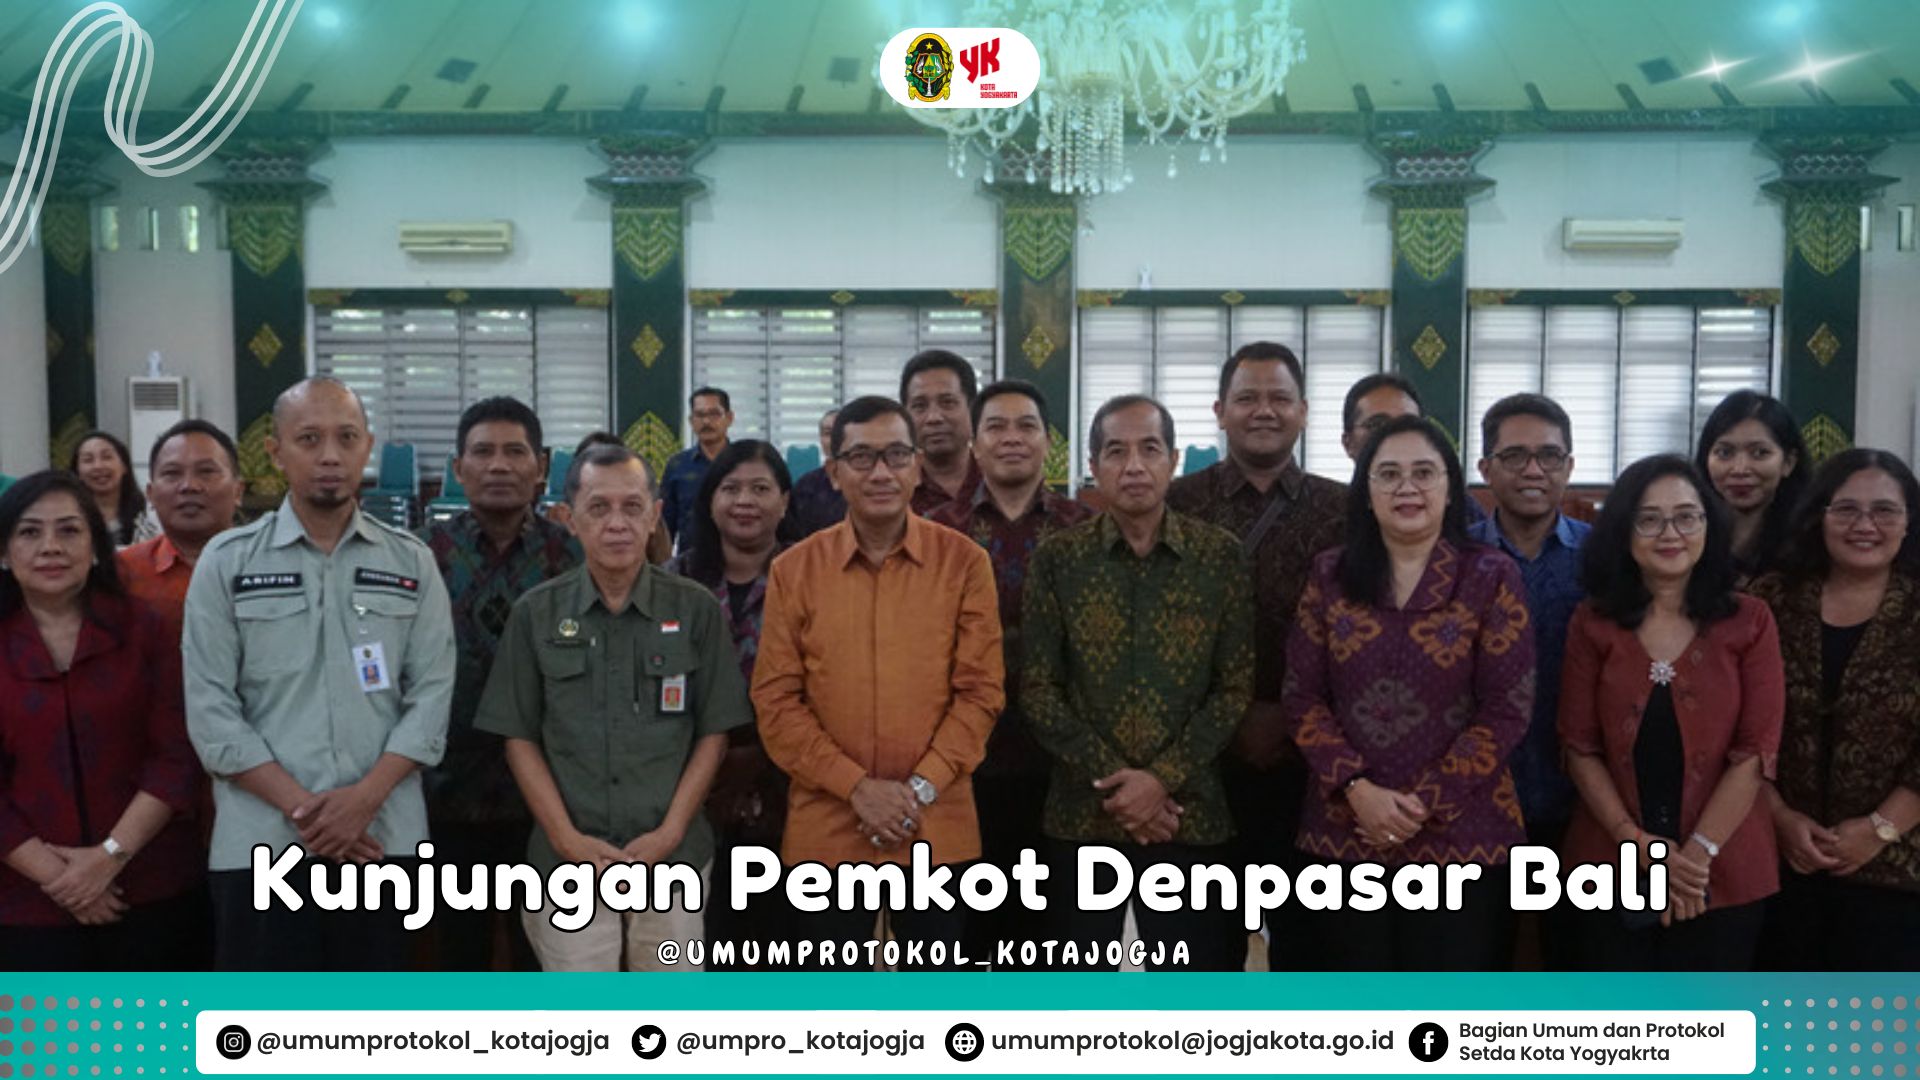 Kunjungan kerja dari Pemerintah Kota Denpasar, Bali Ke Pemerintah Kota Yogyakarta